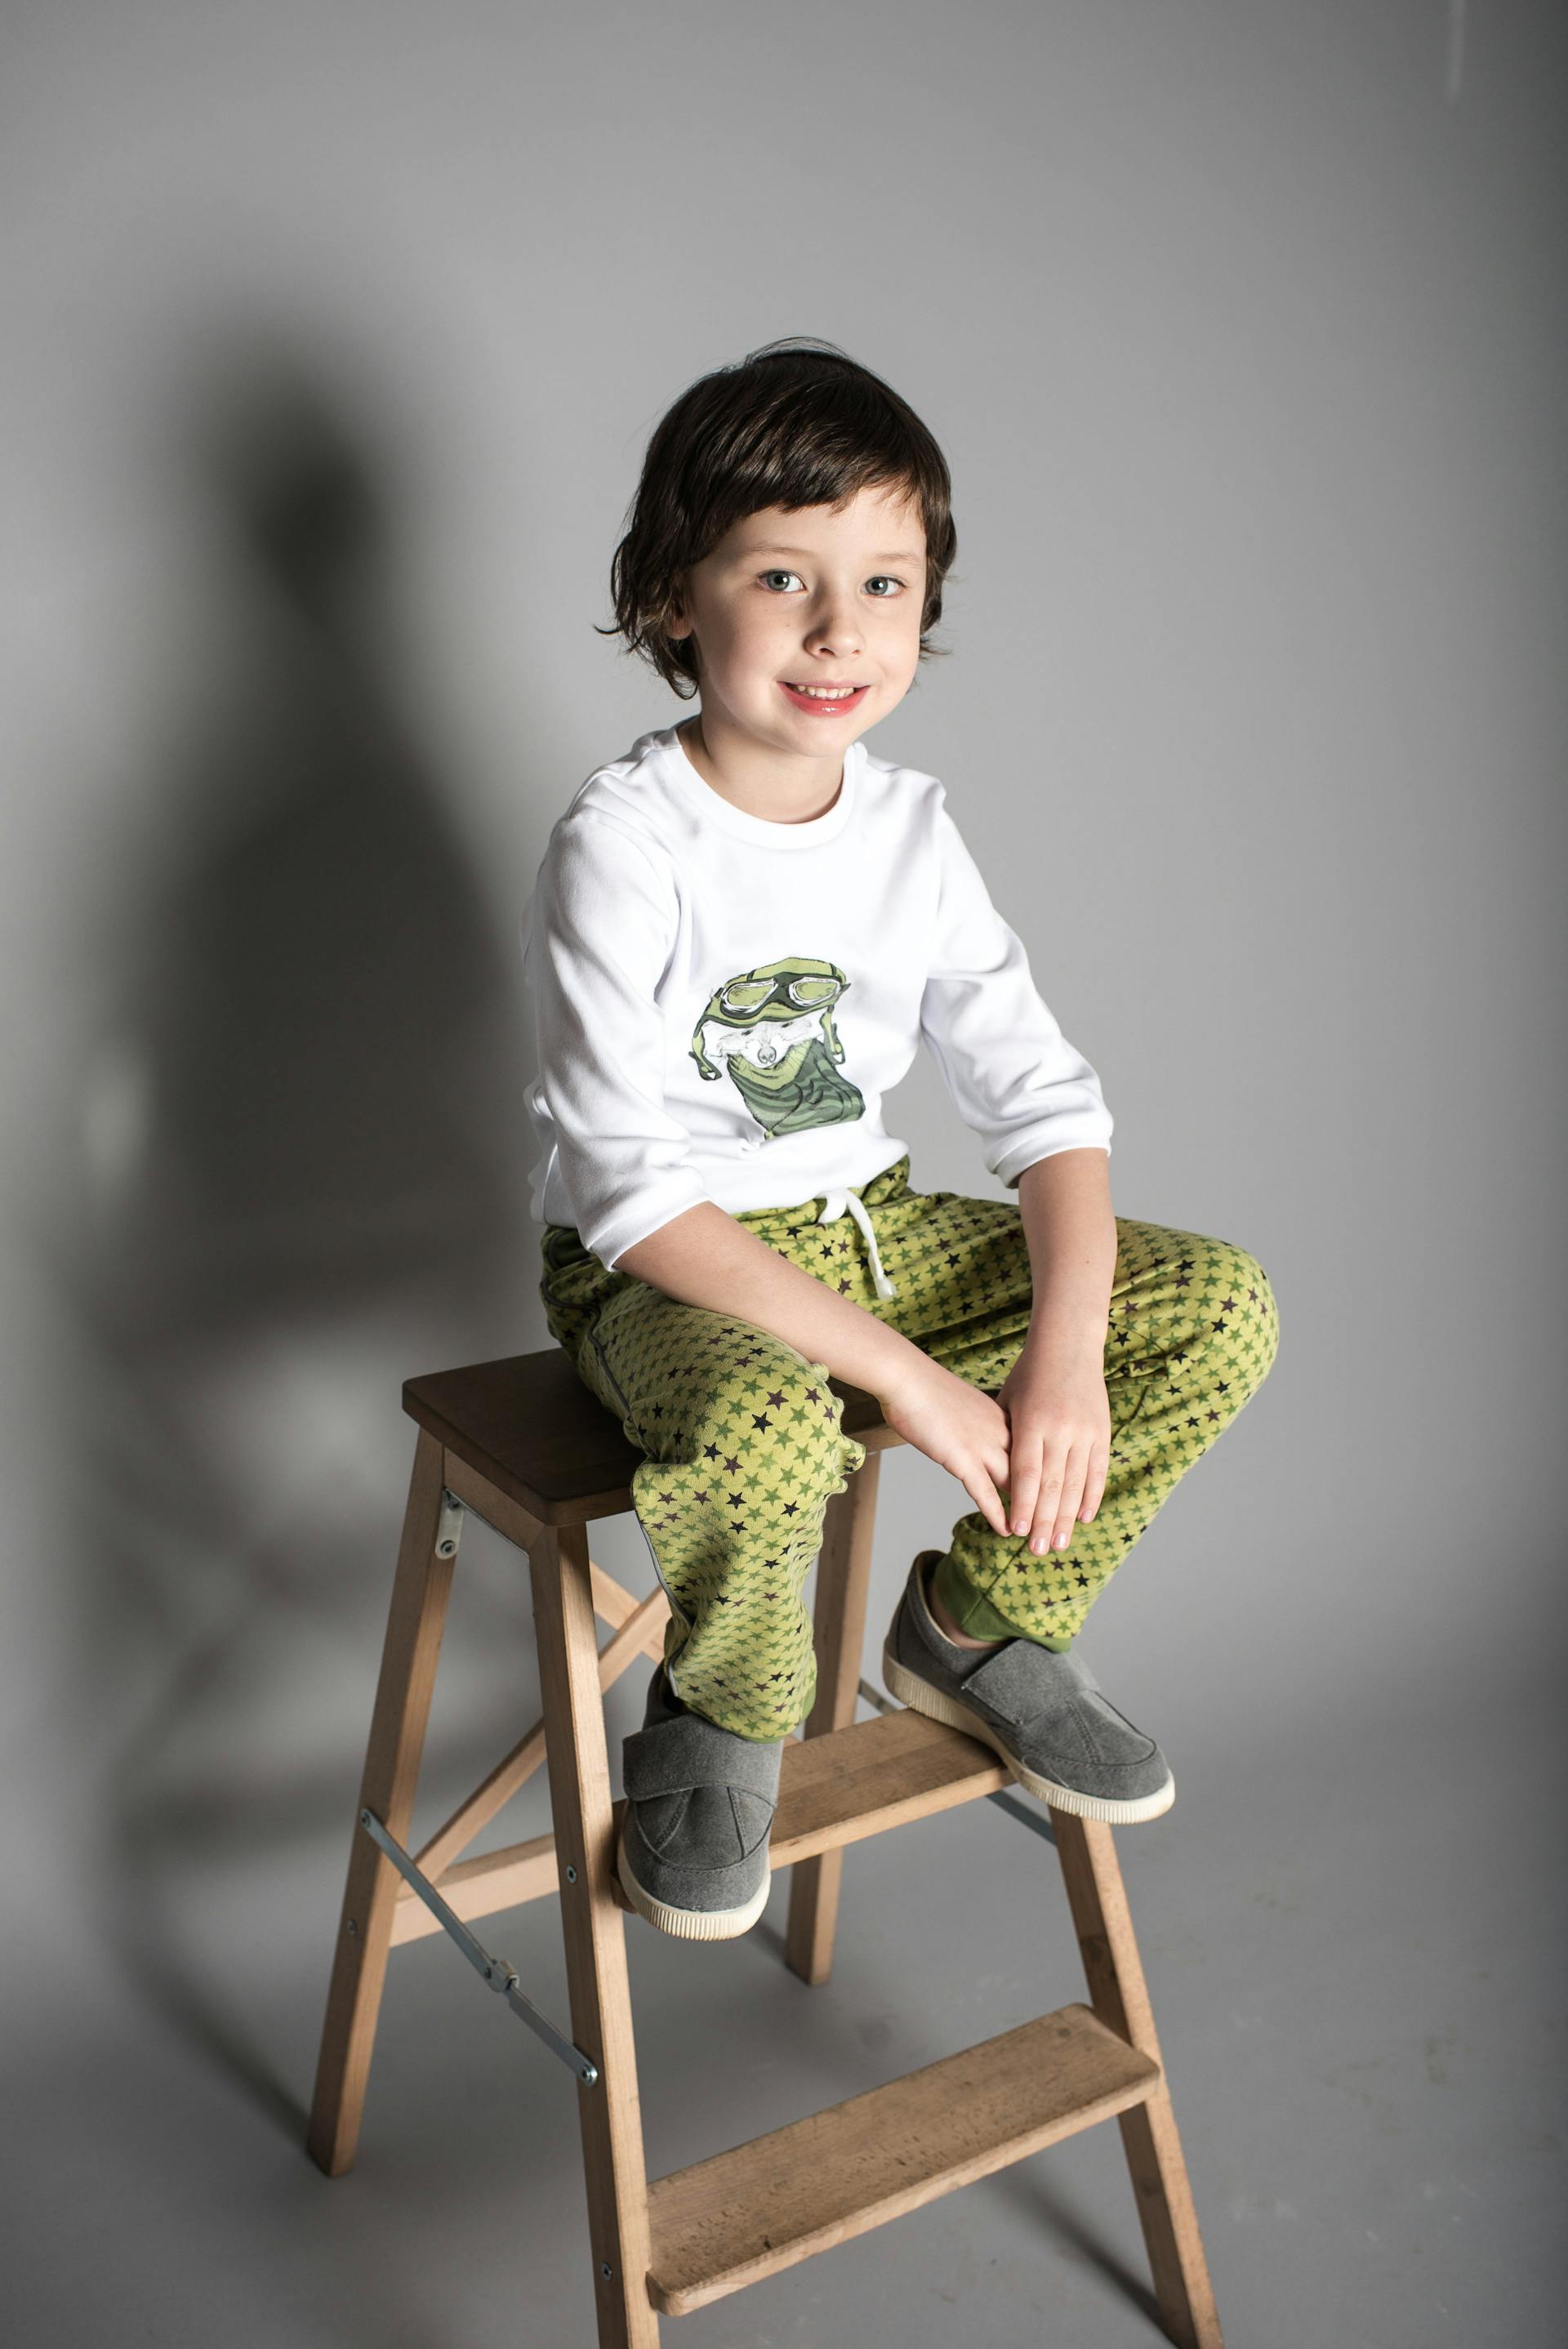 Un petit garçon souriant assis sur un tabouret | Source : Pexels